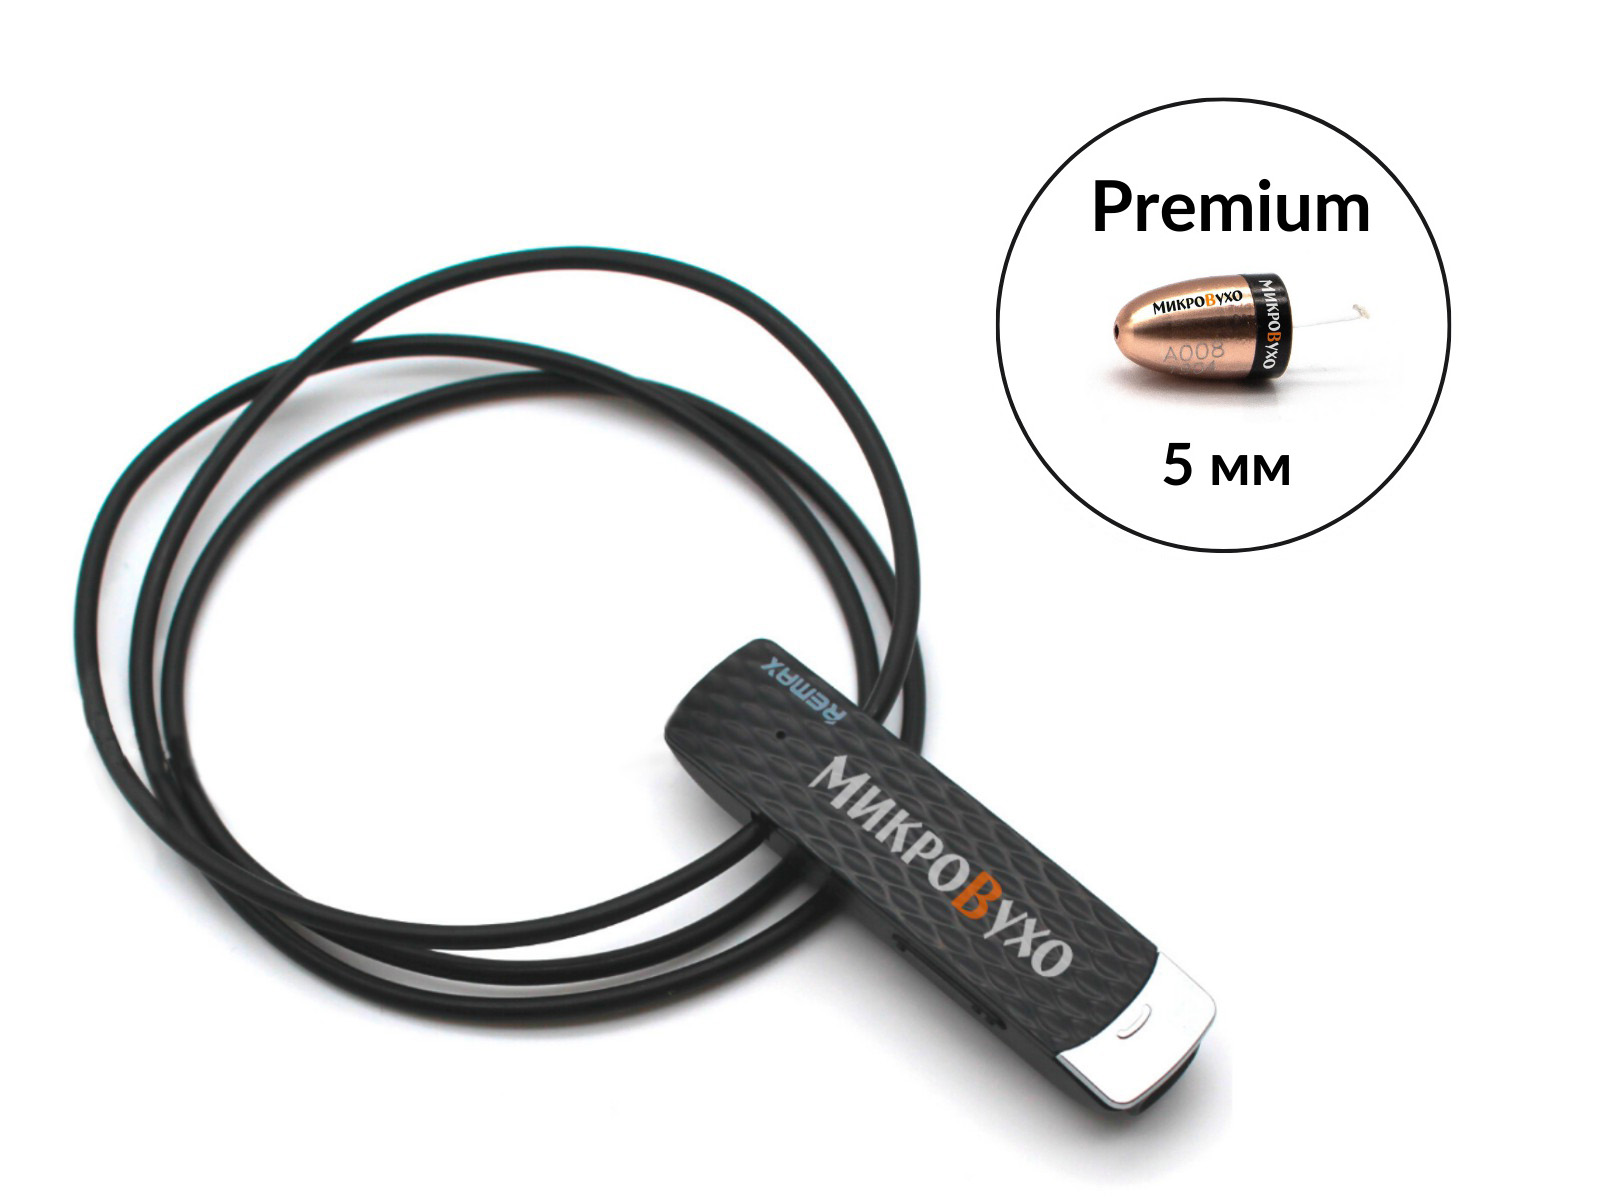 Гарнитура Bluetooth Remax с капсульным микронаушником Premium - изображение